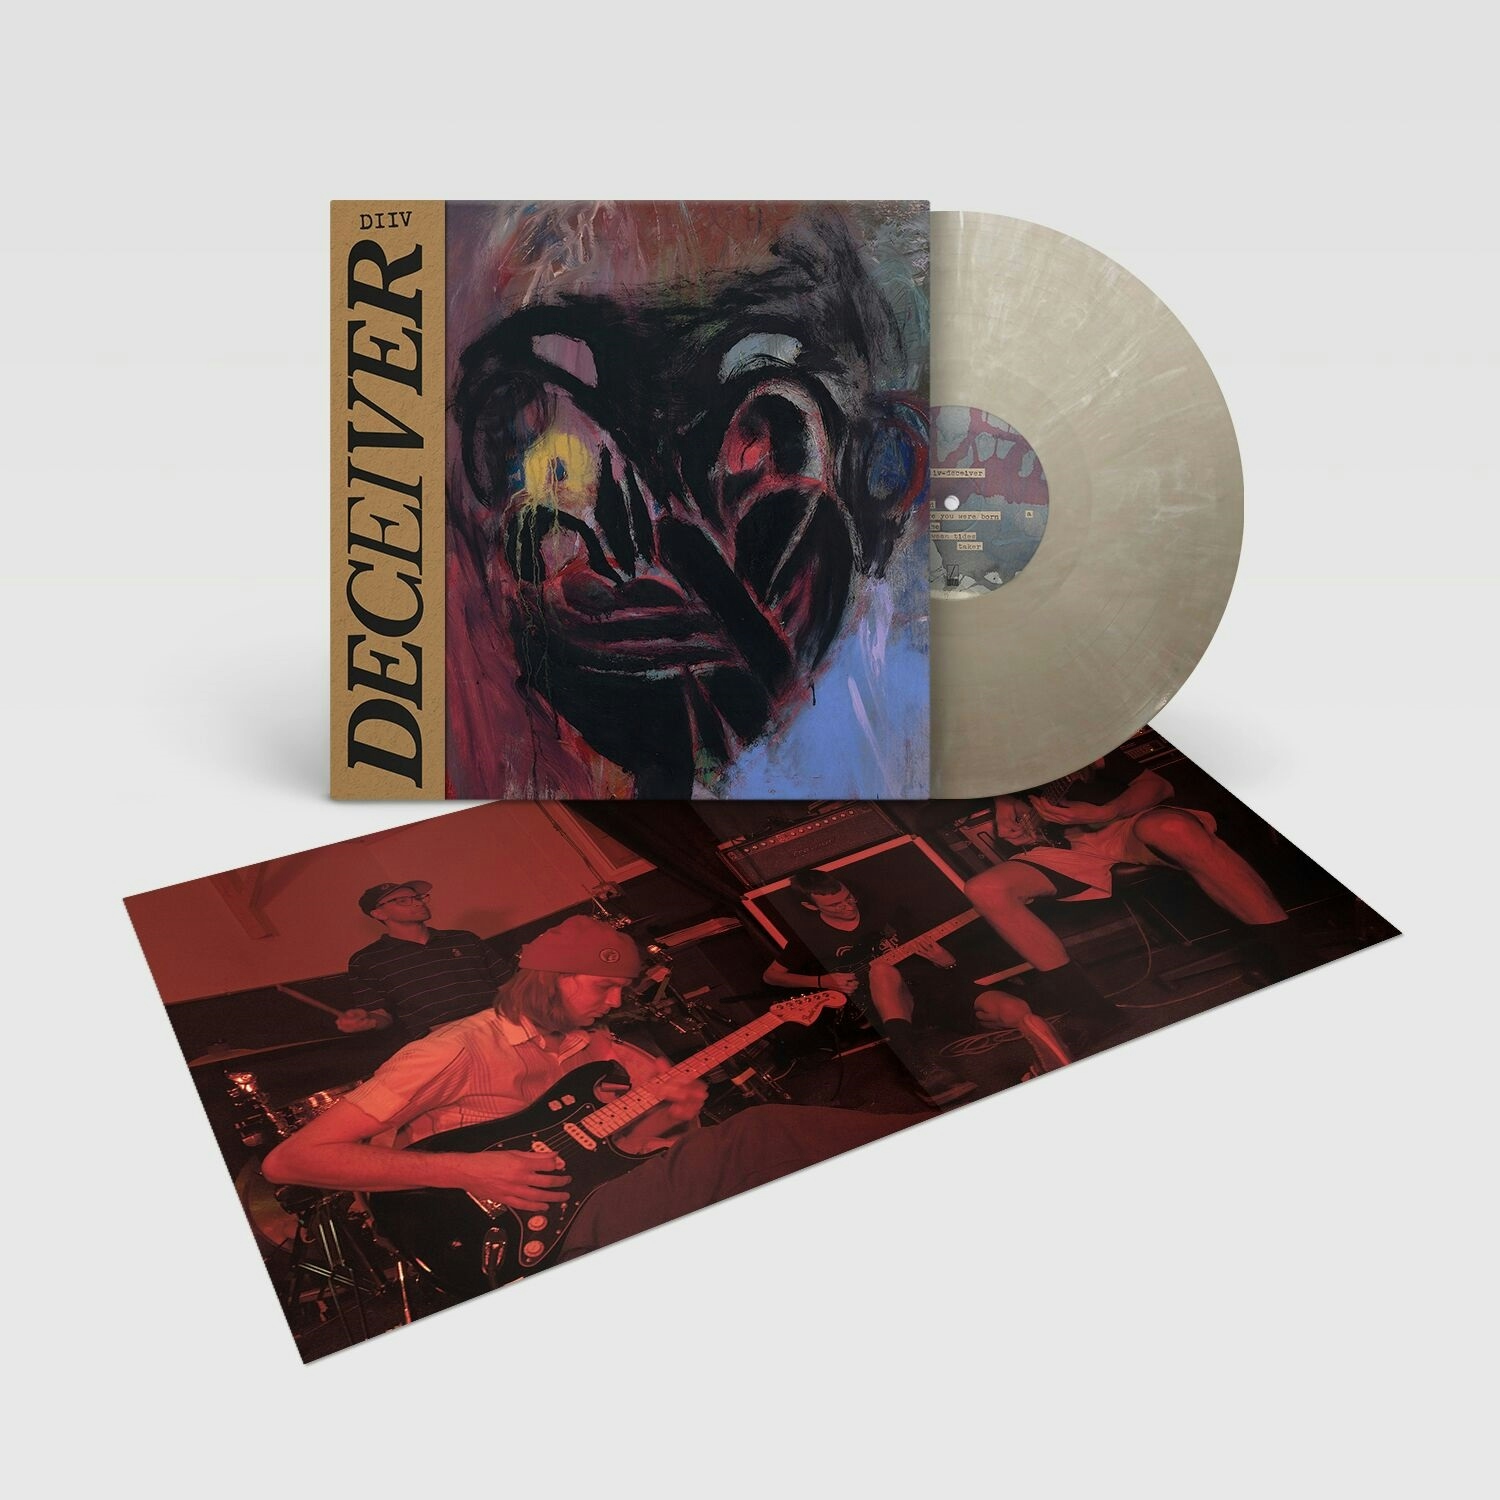 Album artwork for Album artwork for Deceiver by DIIV by Deceiver - DIIV